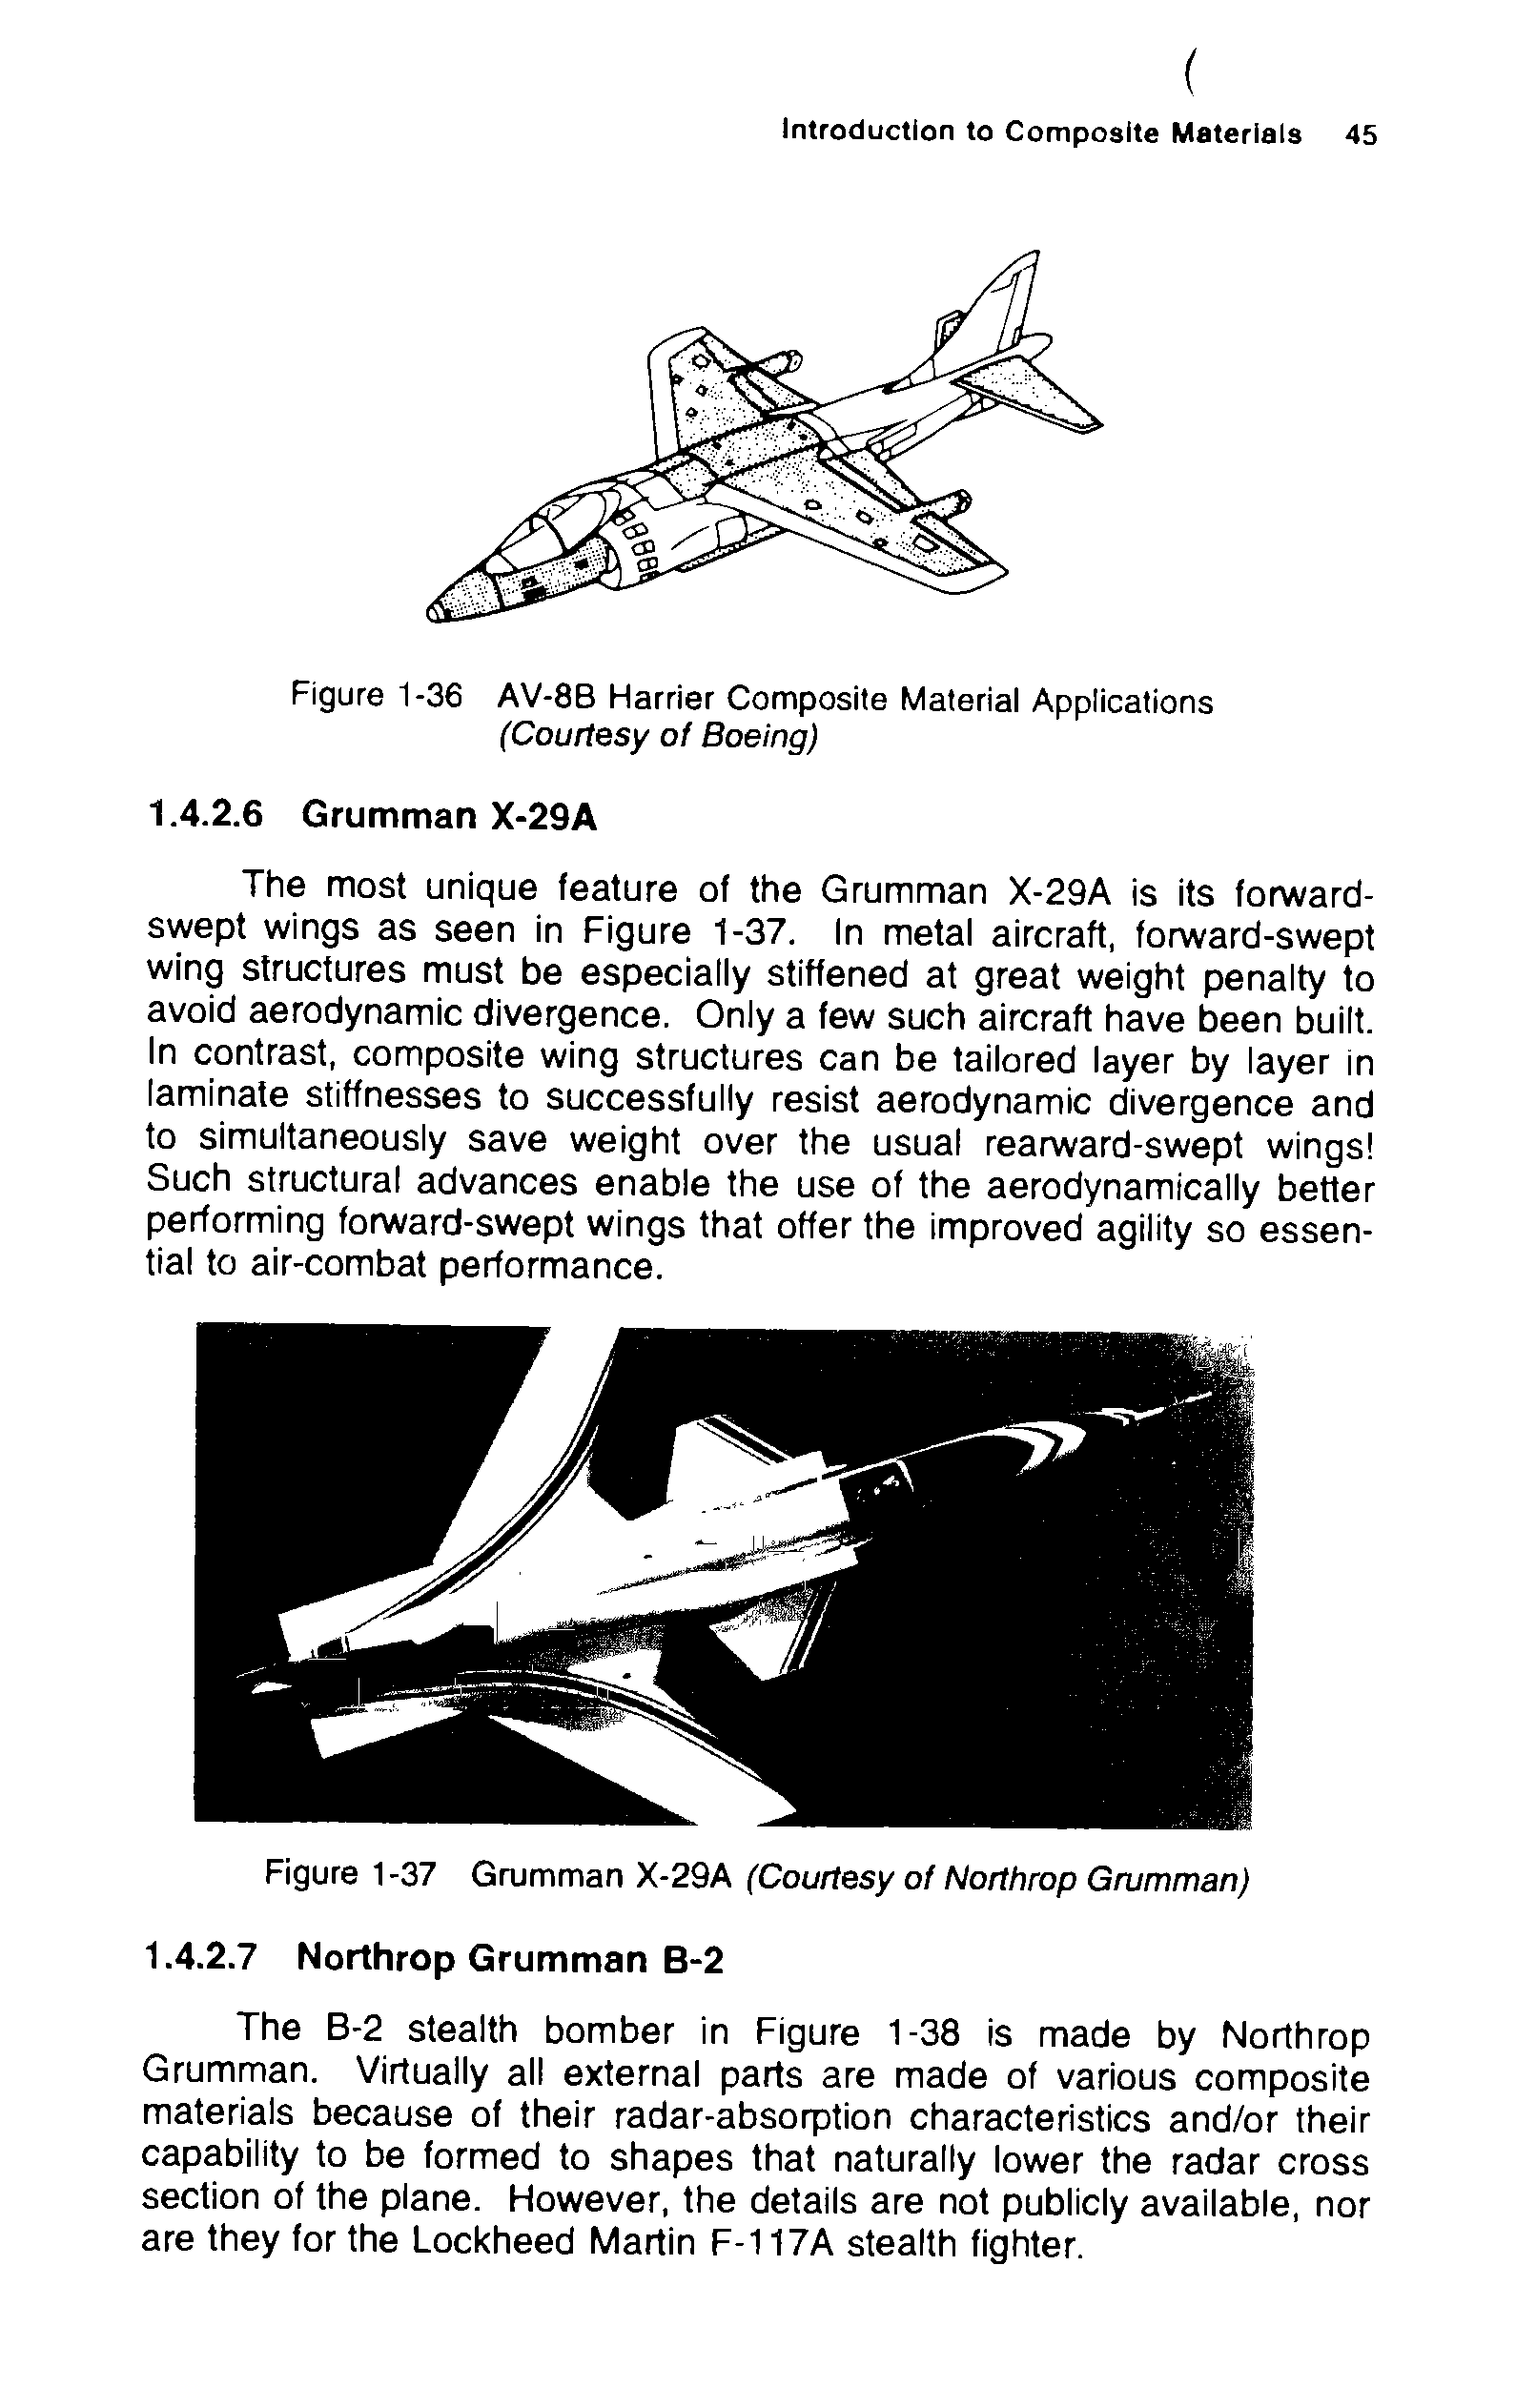 Figure 1-36 AV-8B Harrier Composite Material Applications (Courtesy of Boeing)...